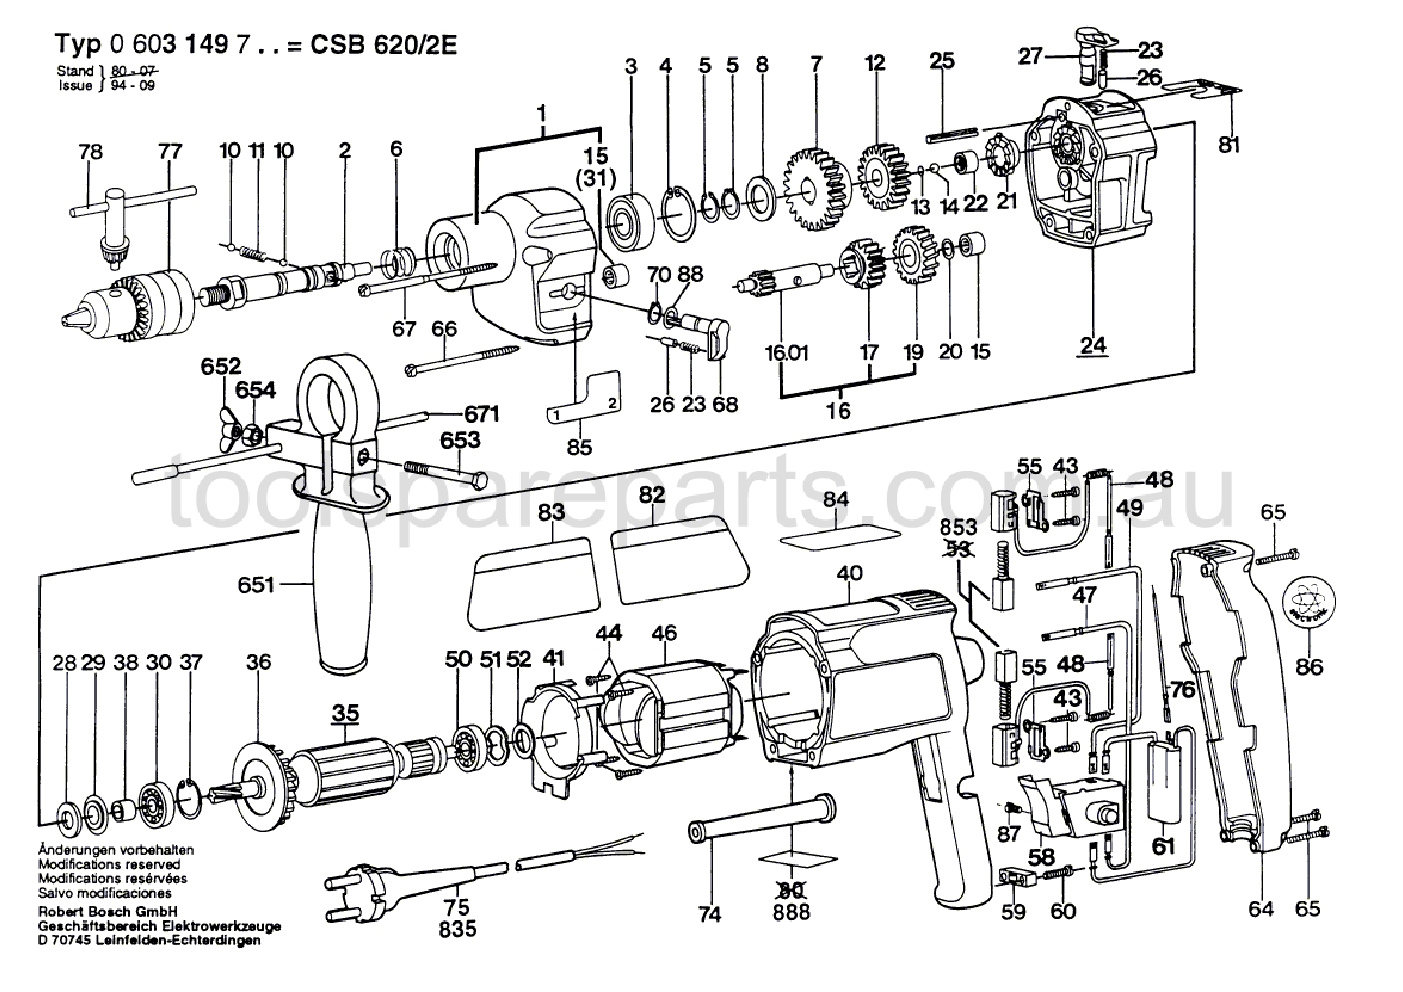 Bosch CSB 620-2 E 0603149737  Diagram 1